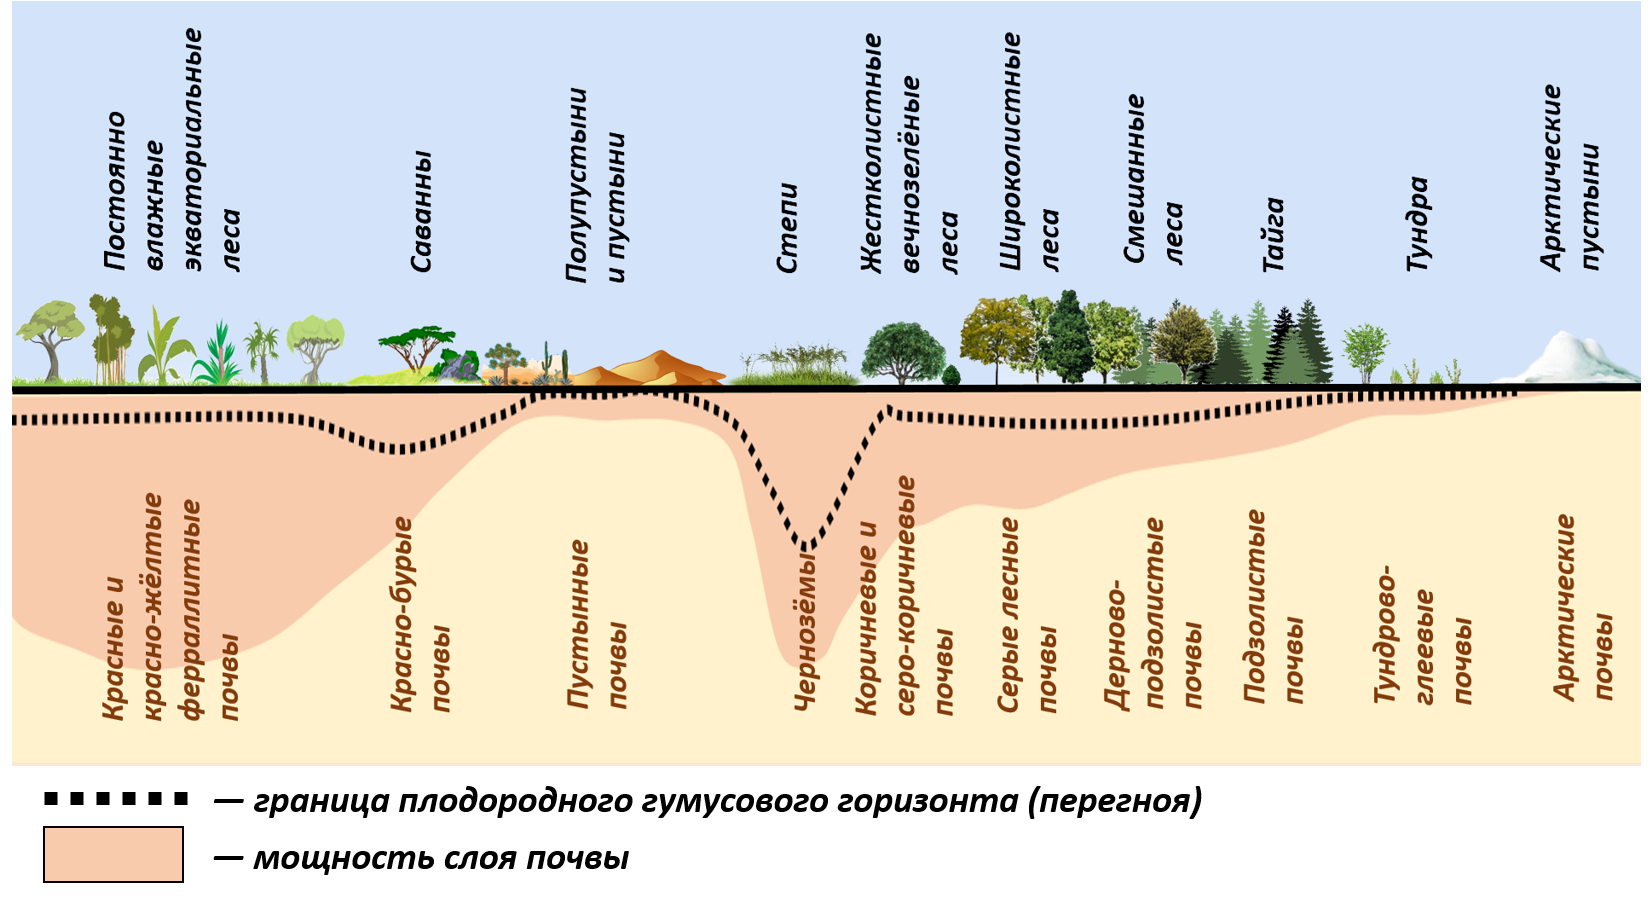 Какие природные зоны проходят через. Почвы природных зон. Распределение почв по природным зонам. Зональное распределение почв. Основные зональные типы почв России.